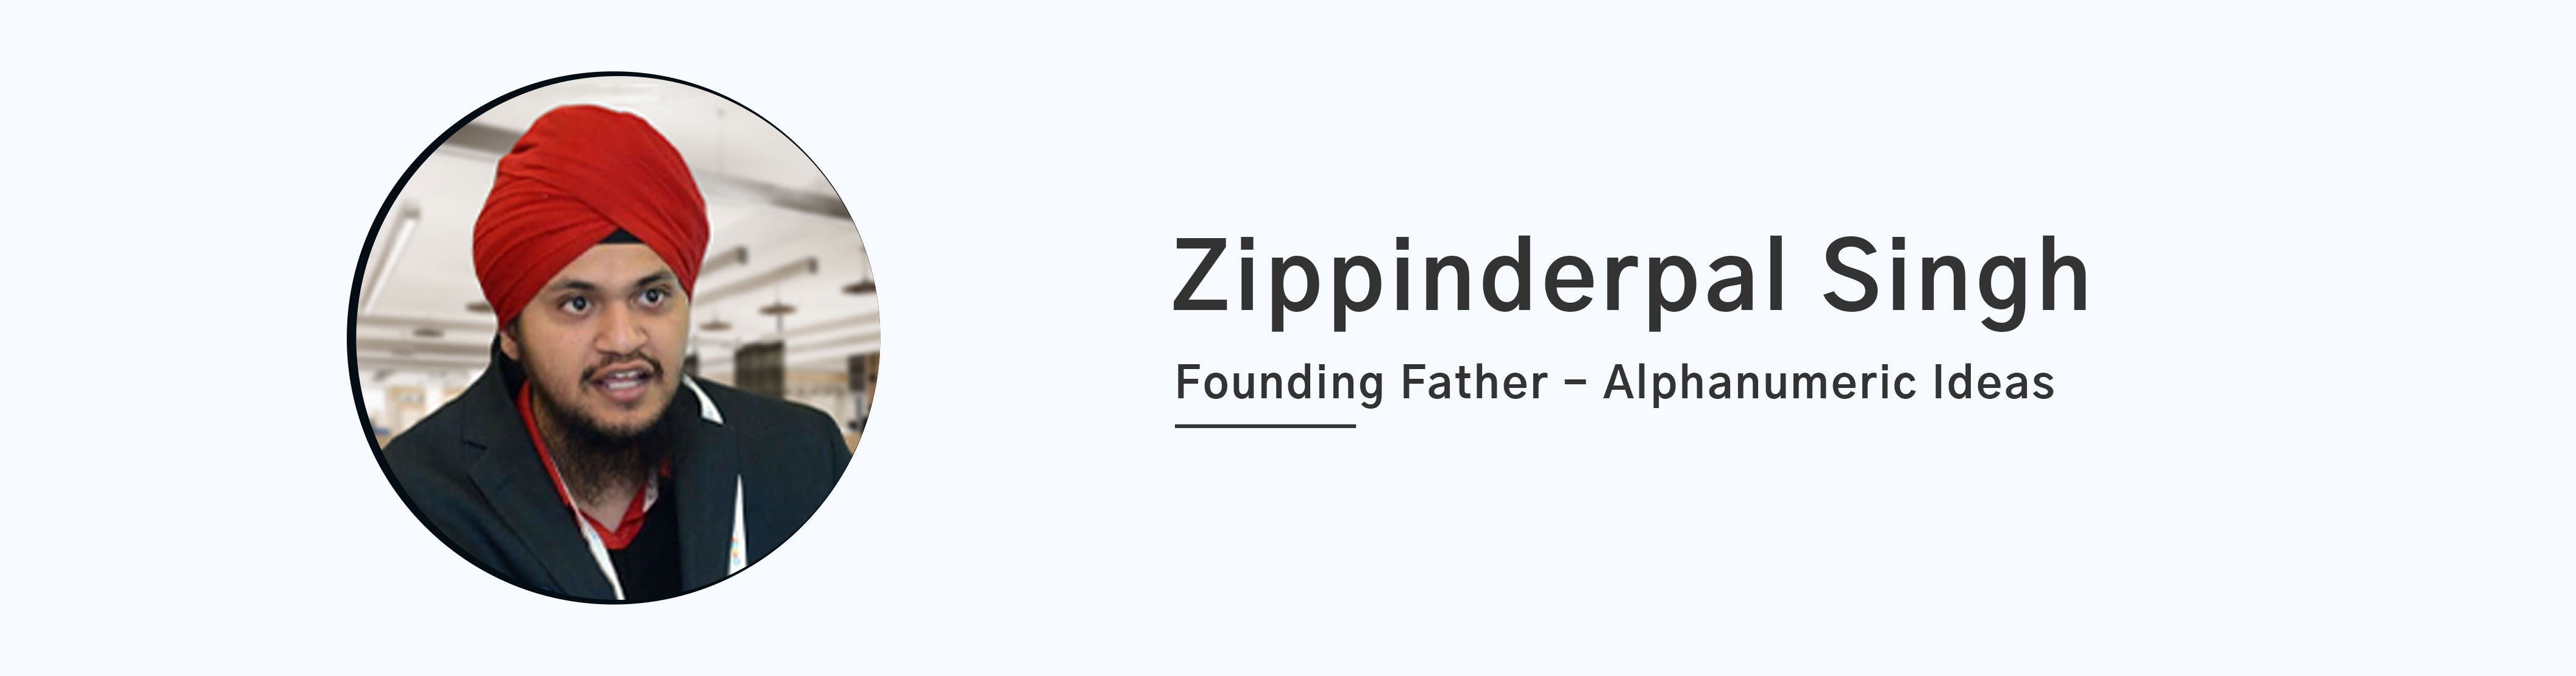 zippinder-banner